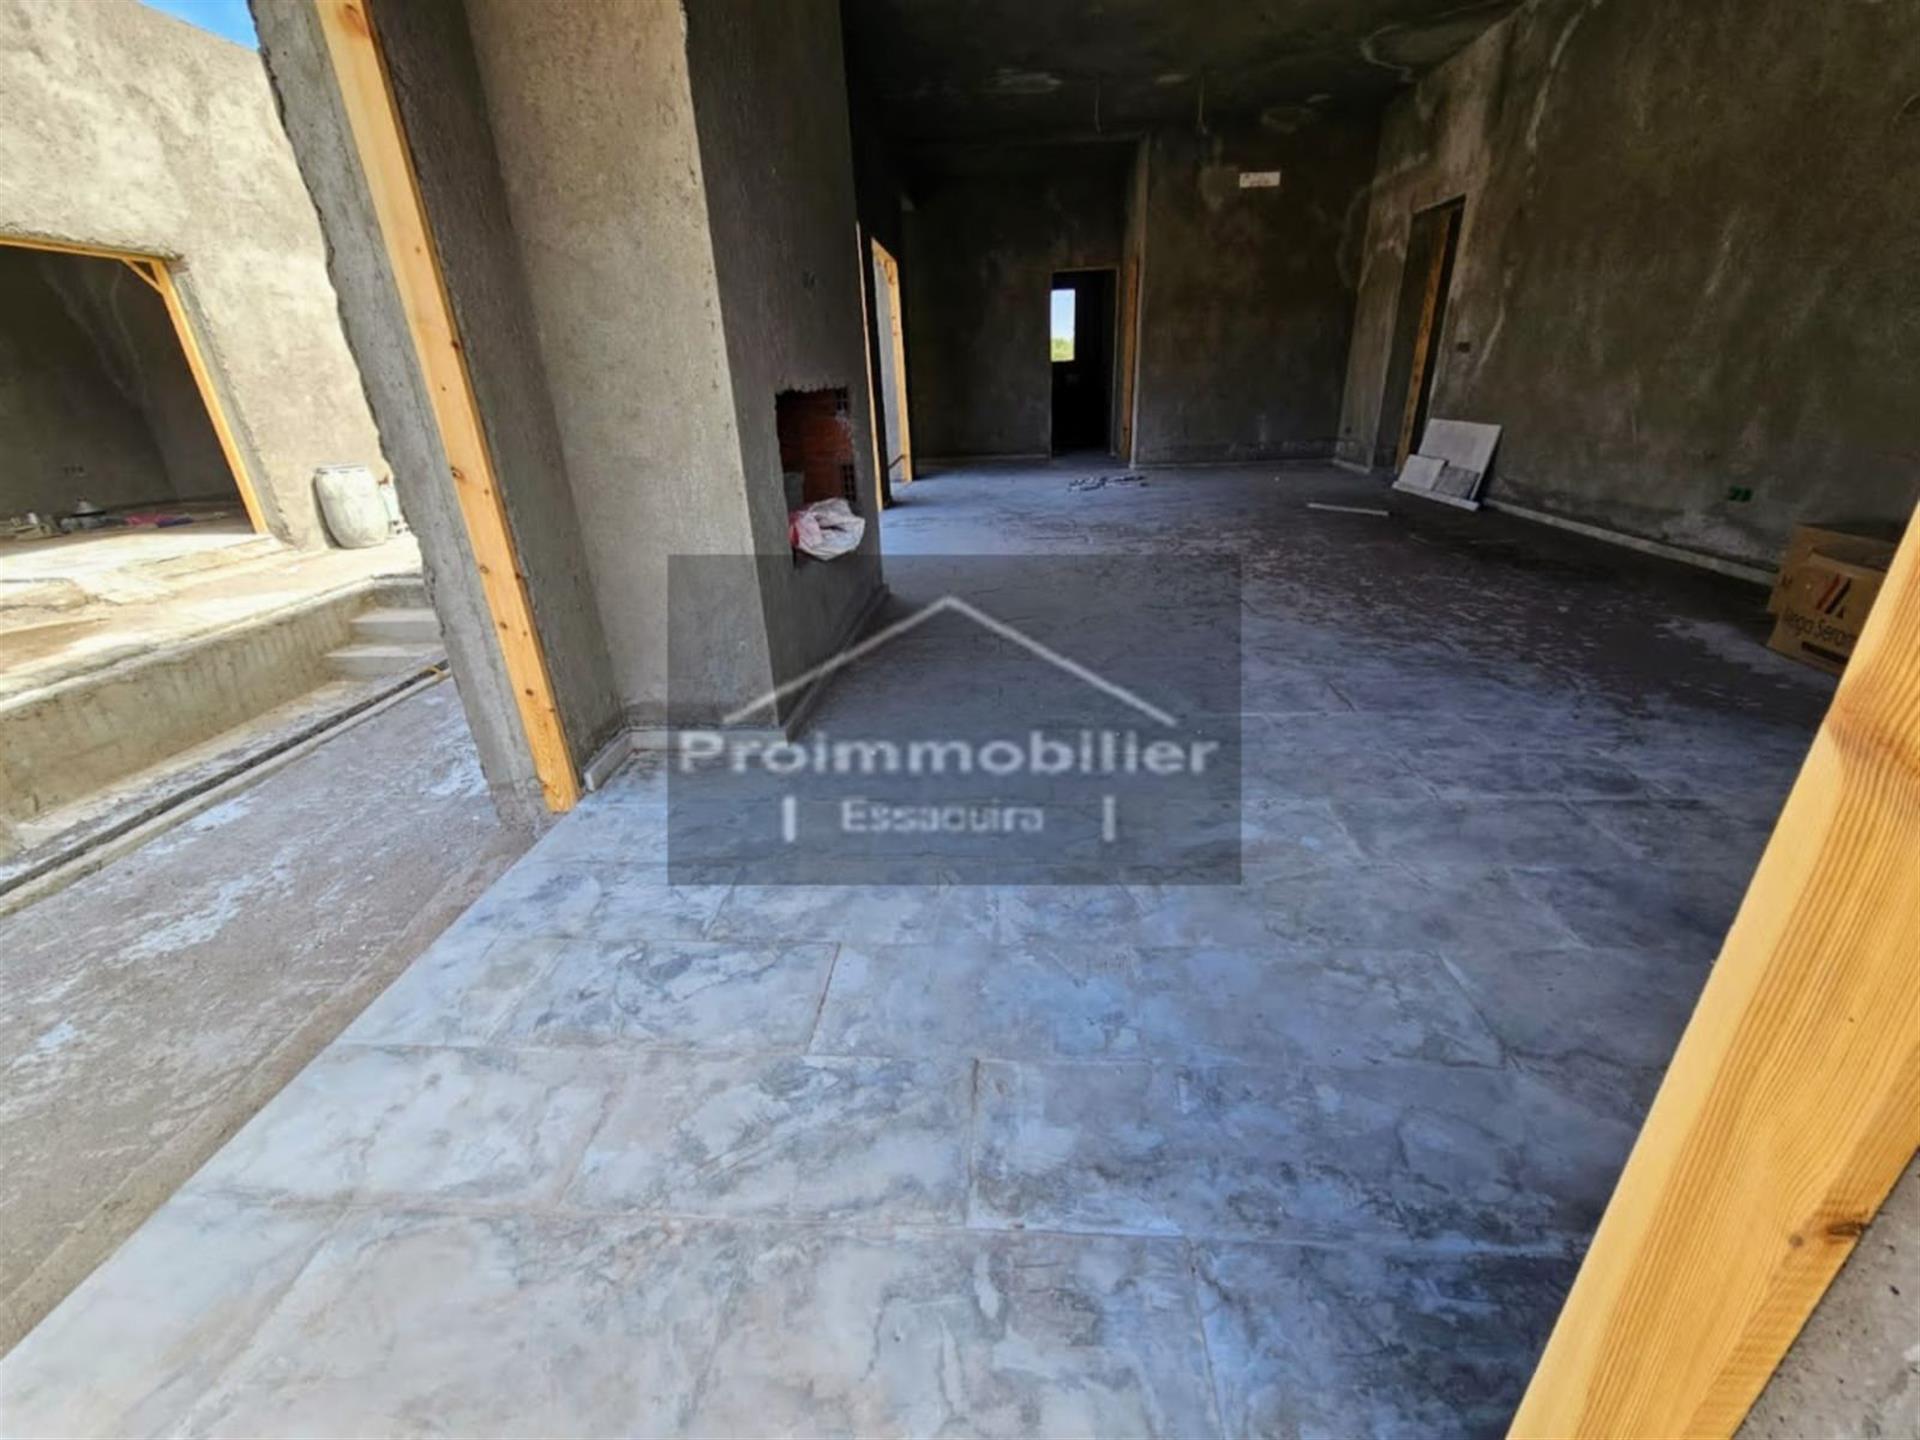 24-05-04-Vv Erstaunliche neue Villa im Bau zum Verkauf in Essaouira von 190m² Grundstück 1230 m²